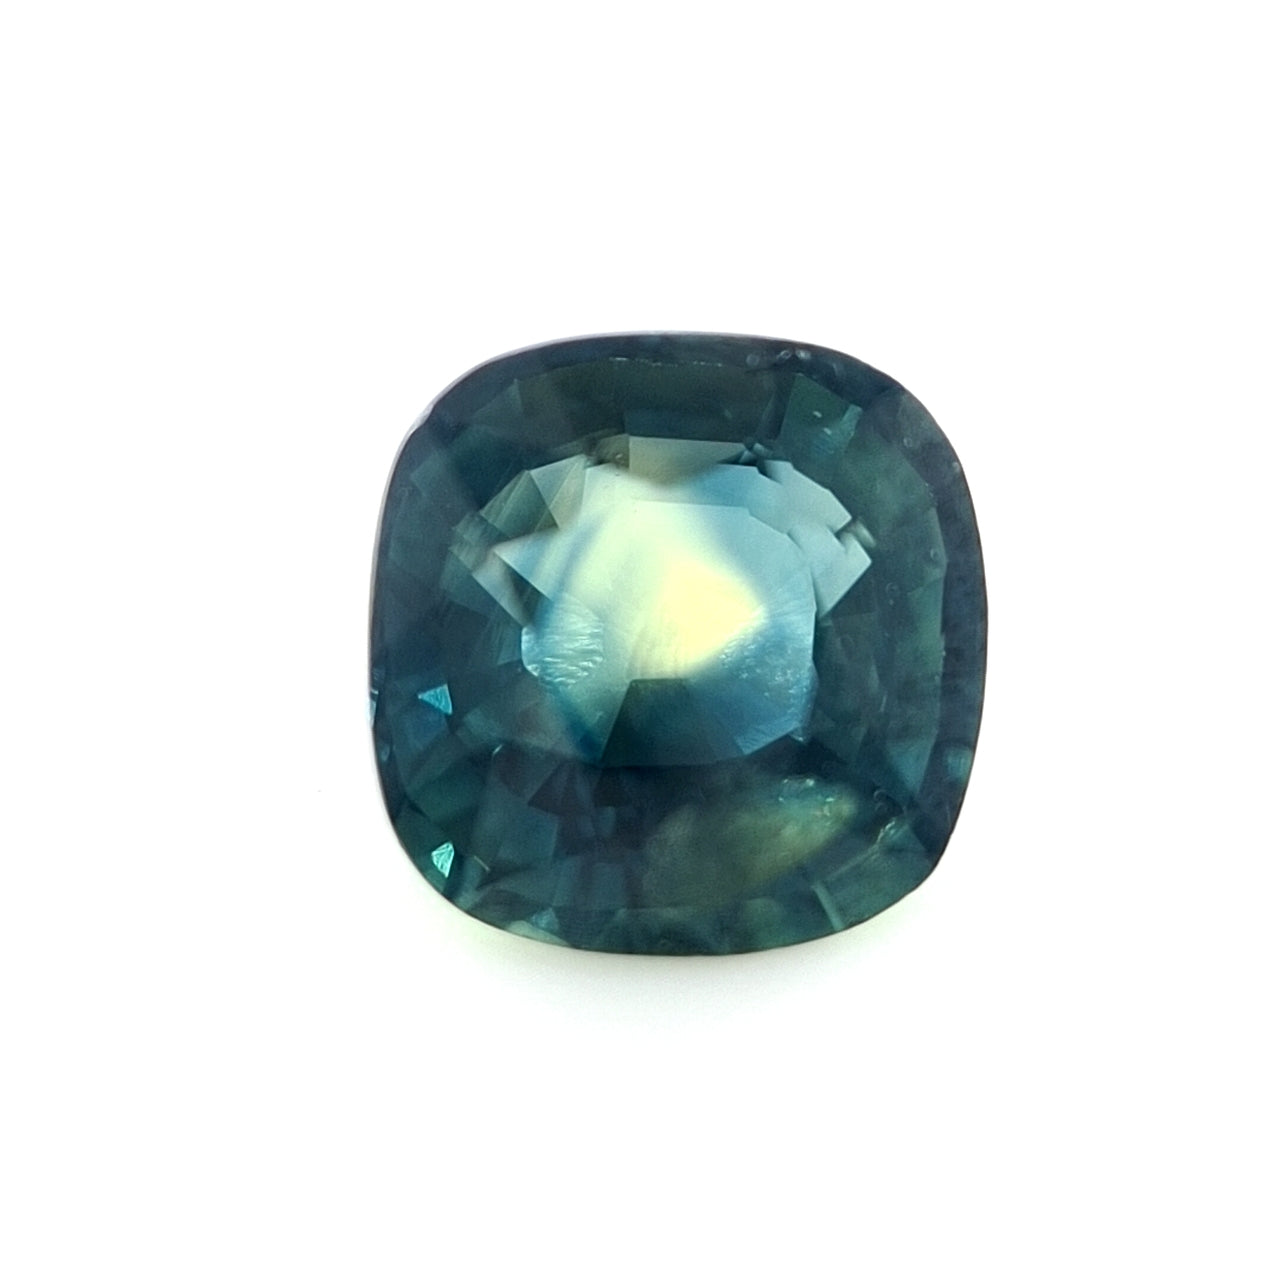 1.35ct Australian Sapphire, Blue, Yellow, Teal - Cushion